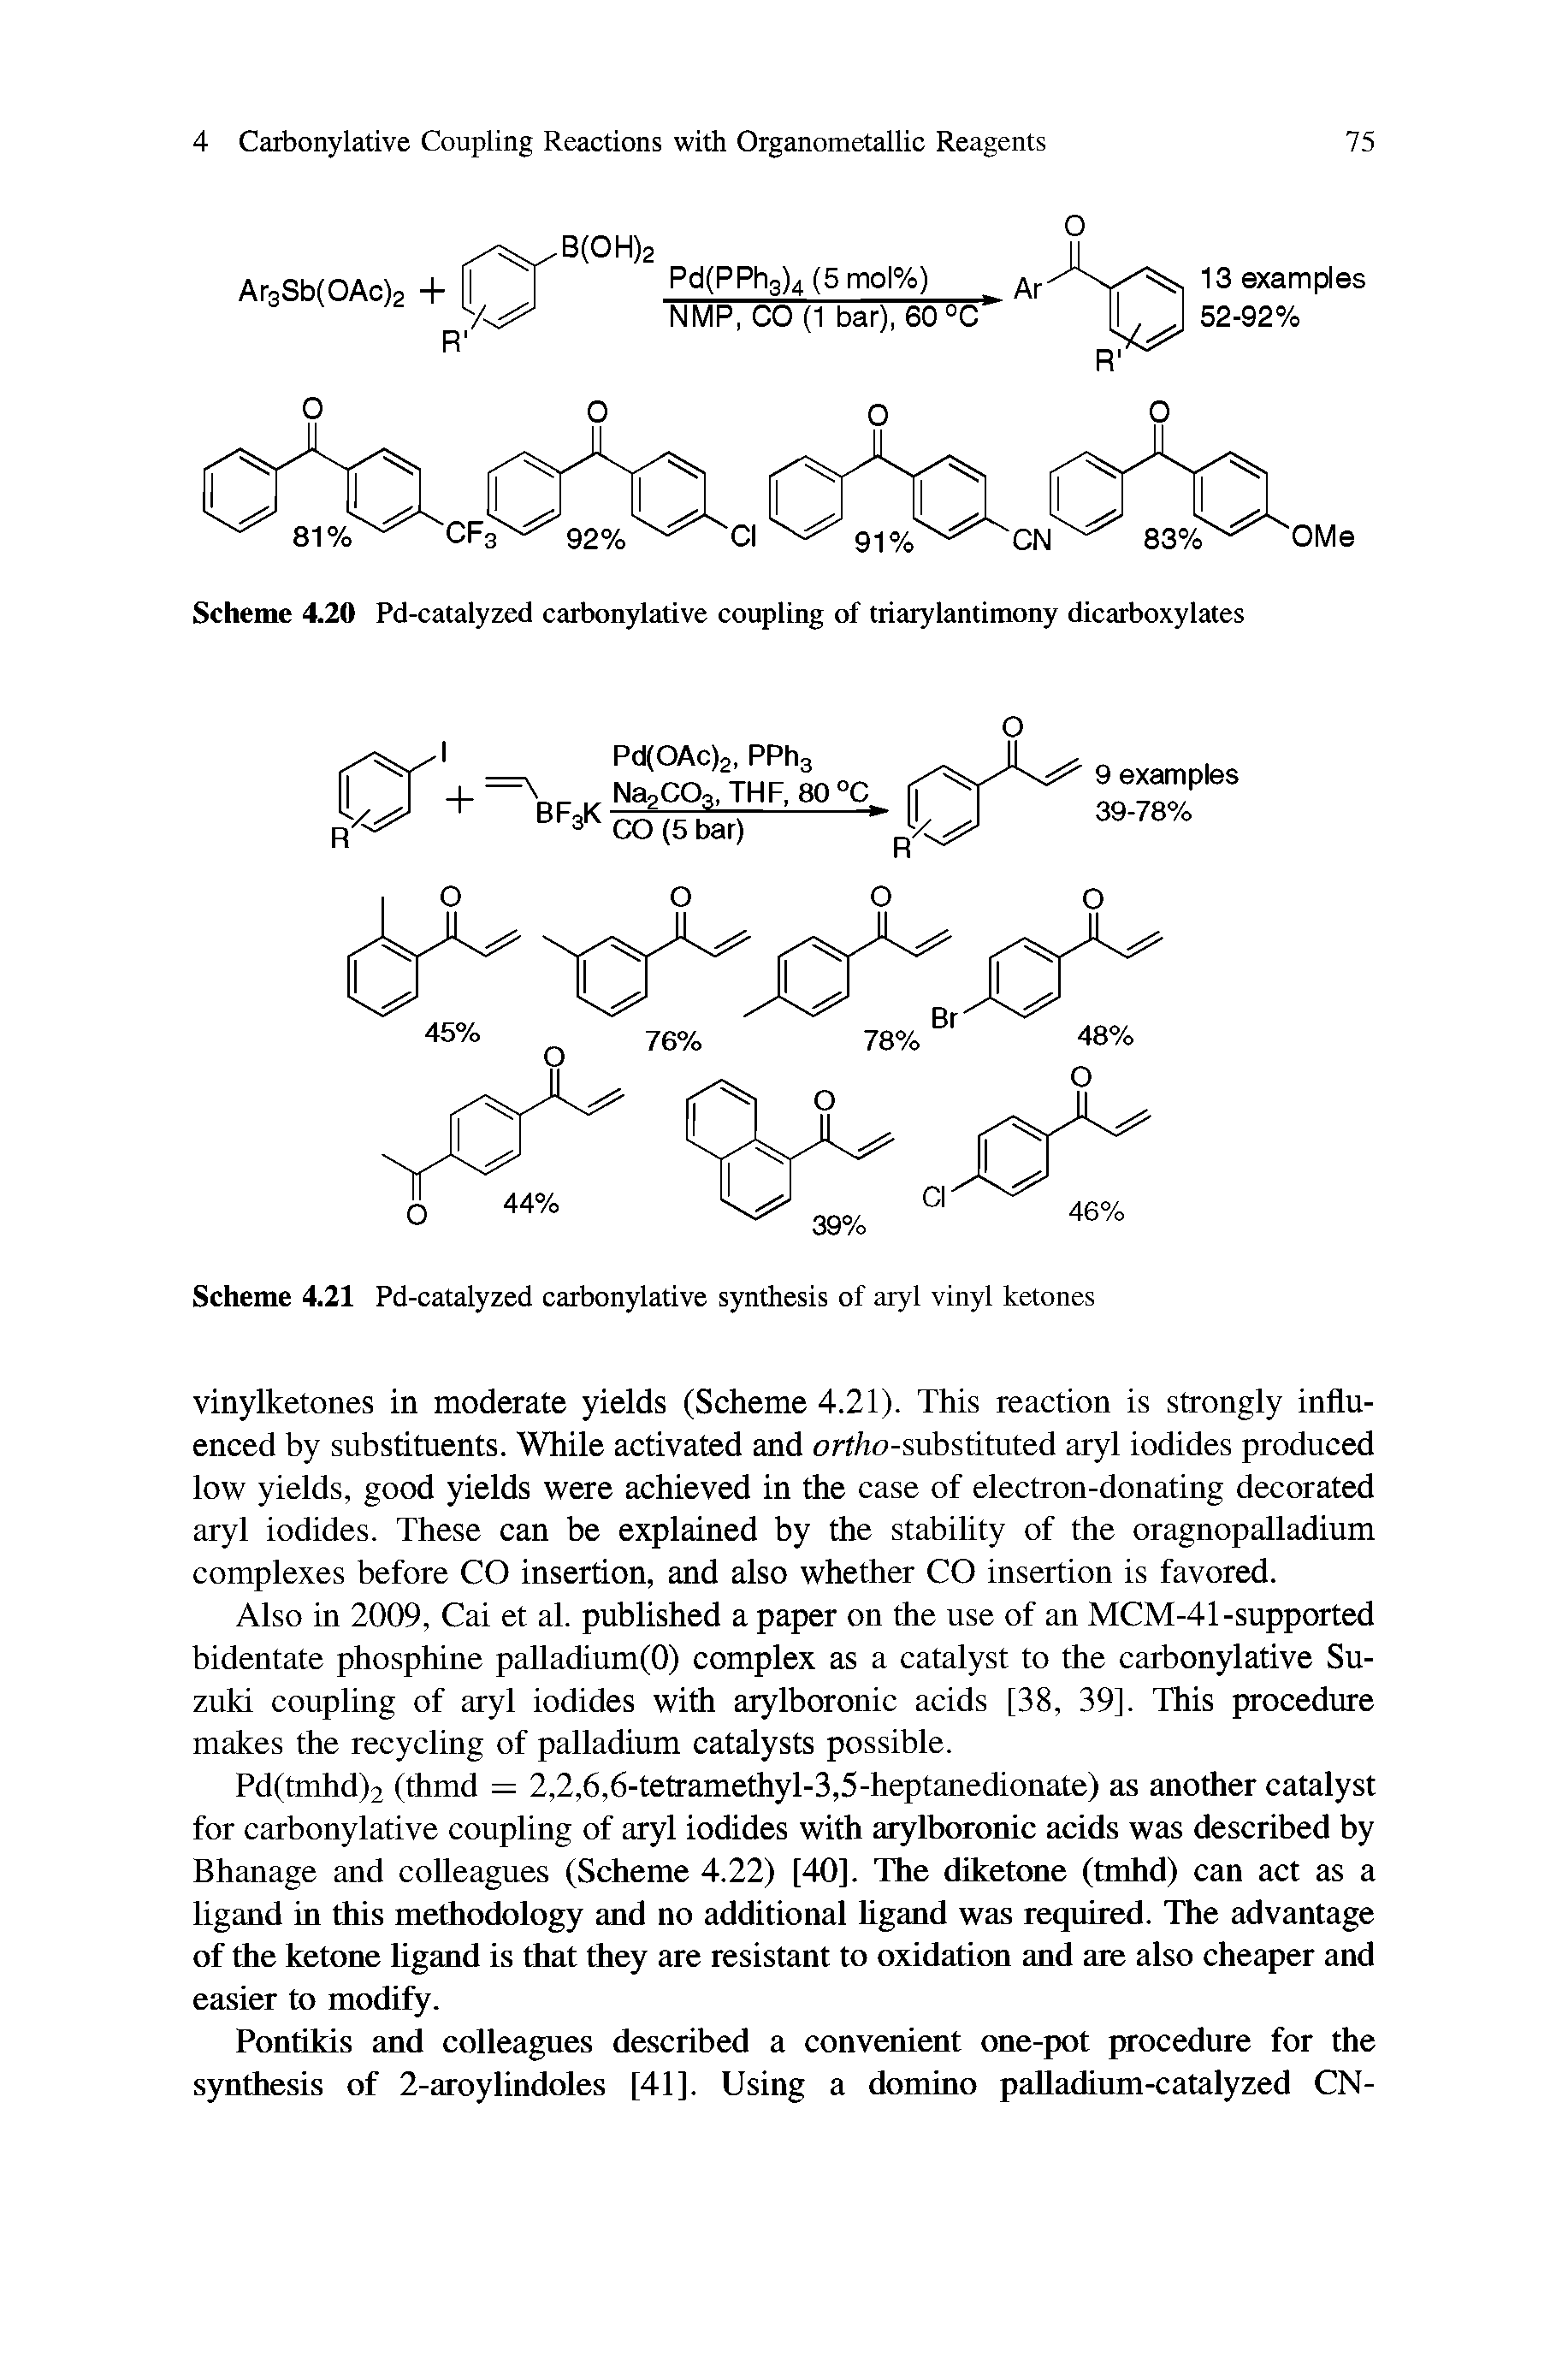 Scheme 4.21 Pd-catalyzed carbonylative synthesis of aryl vinyl ketones...